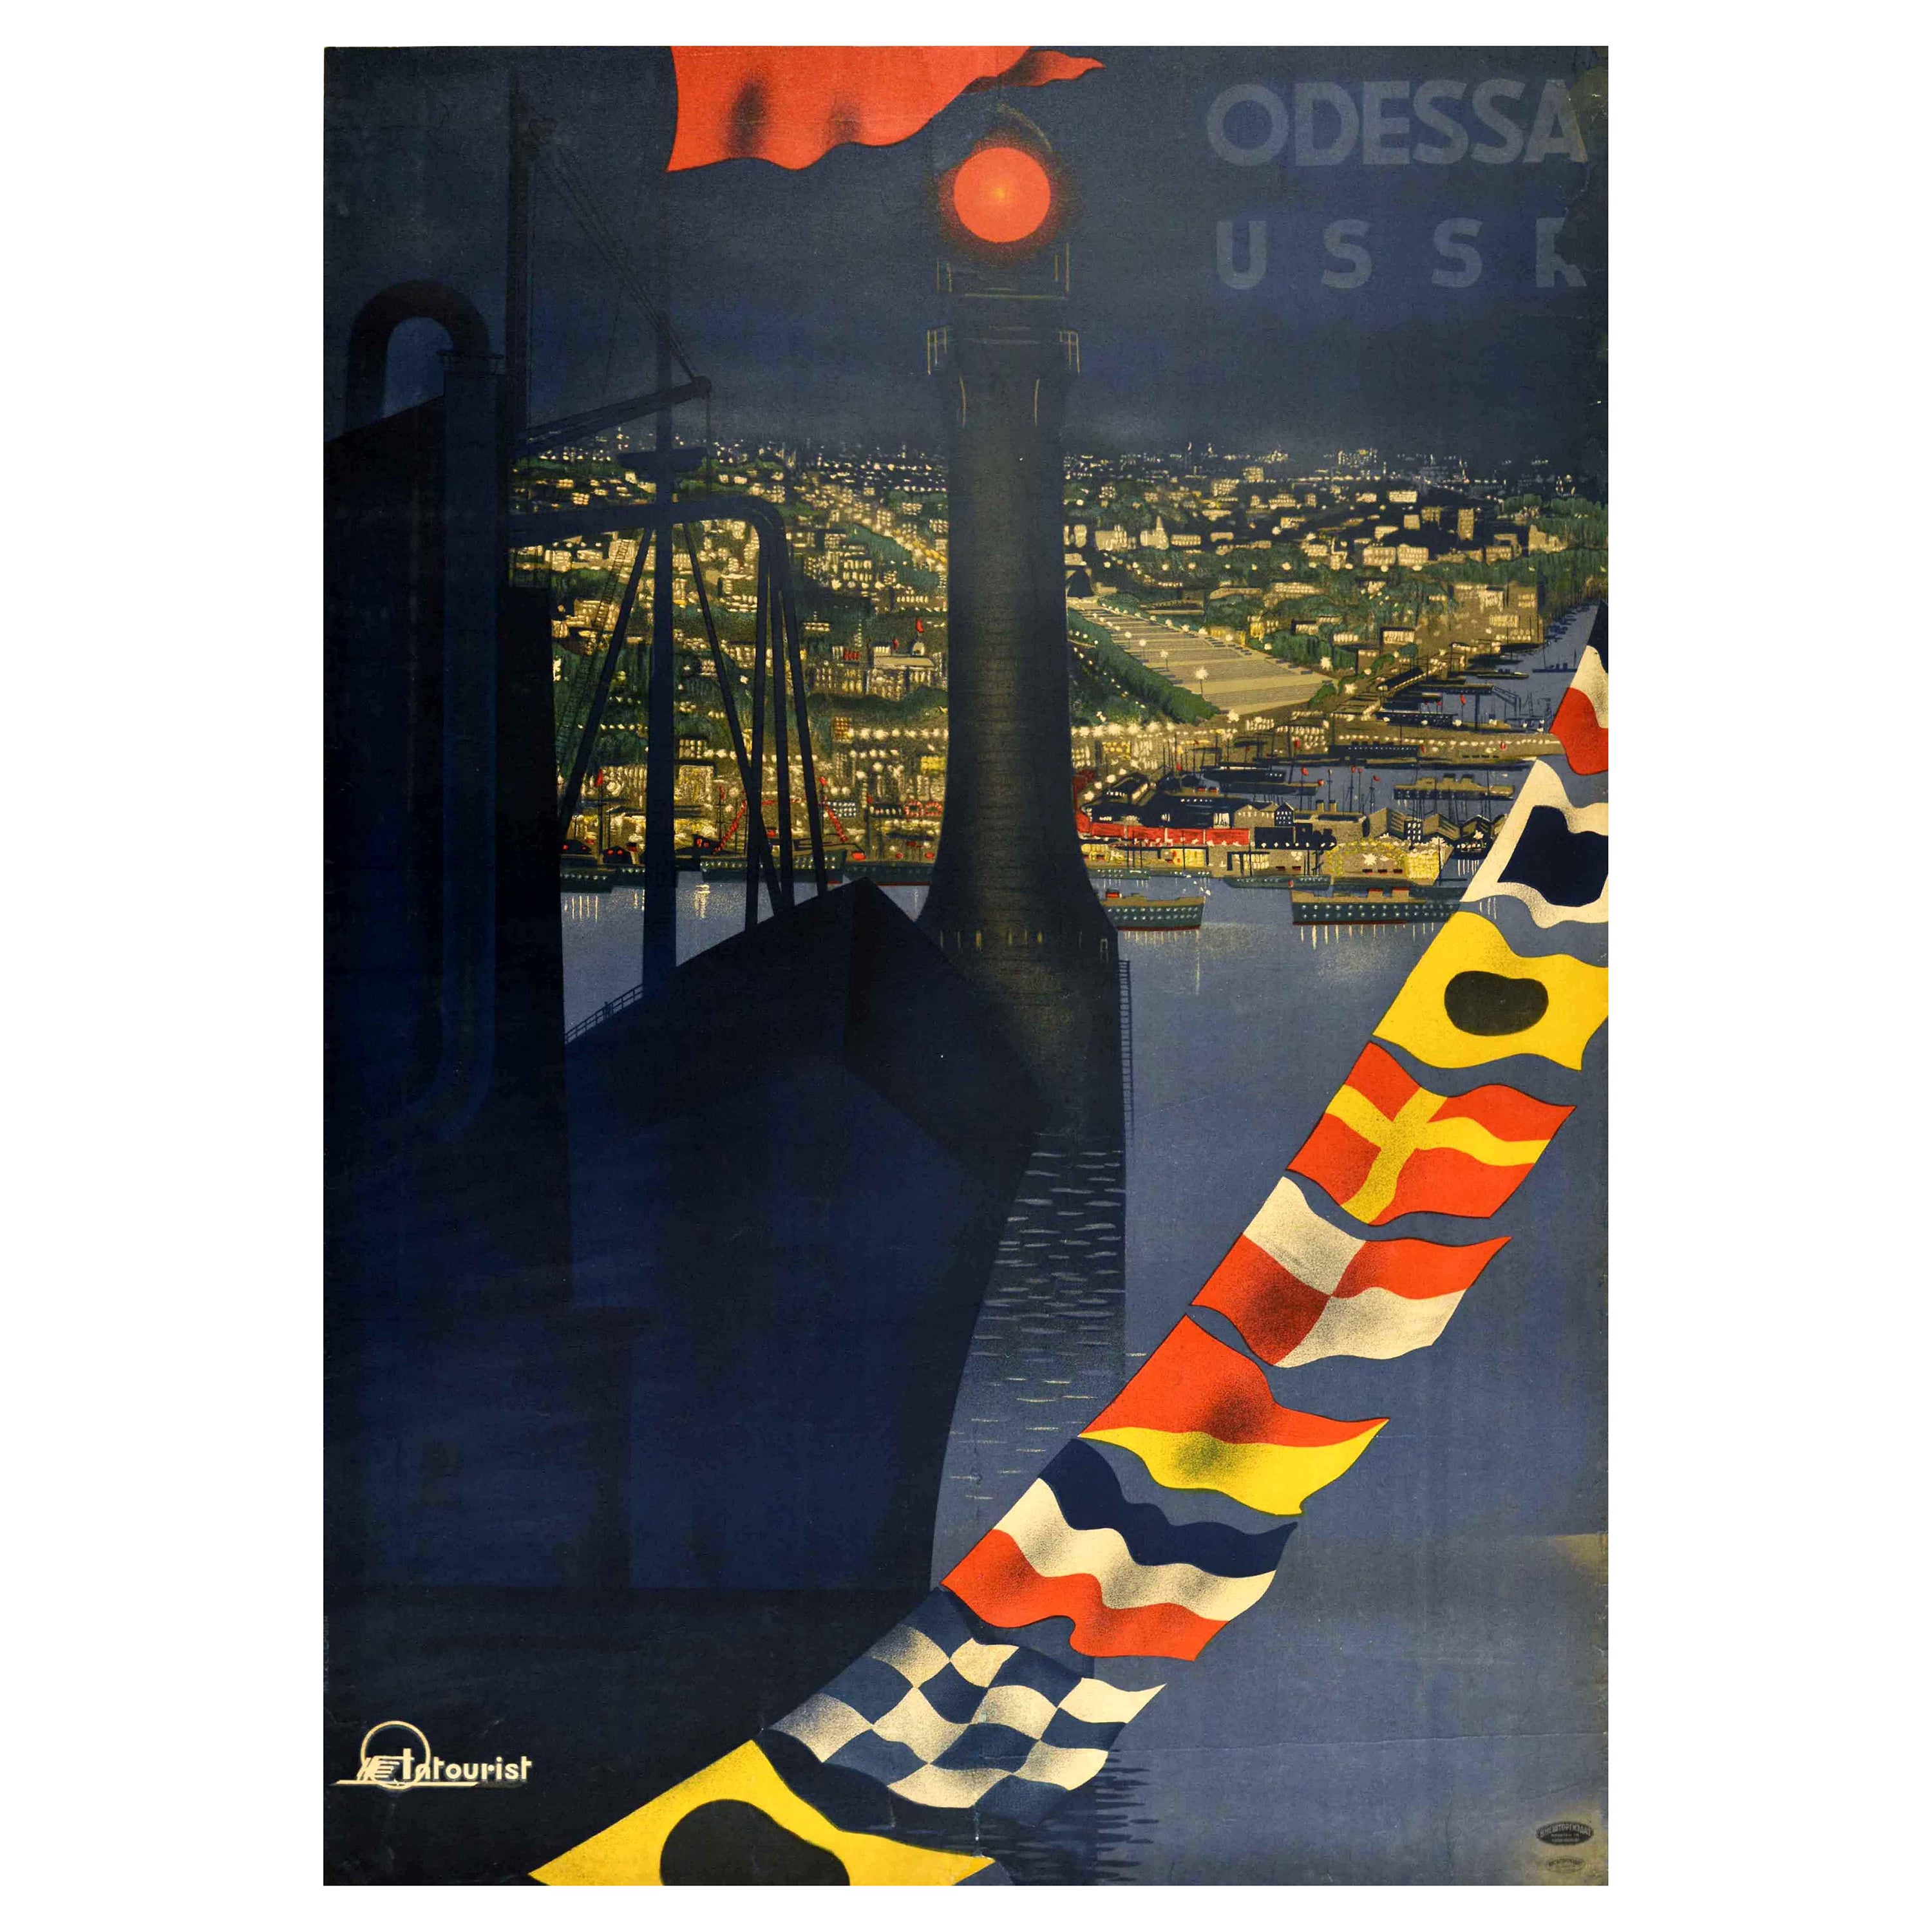 Original Vintage Intourist Poster For Odessa USSR Black Sea Port City Travel Art